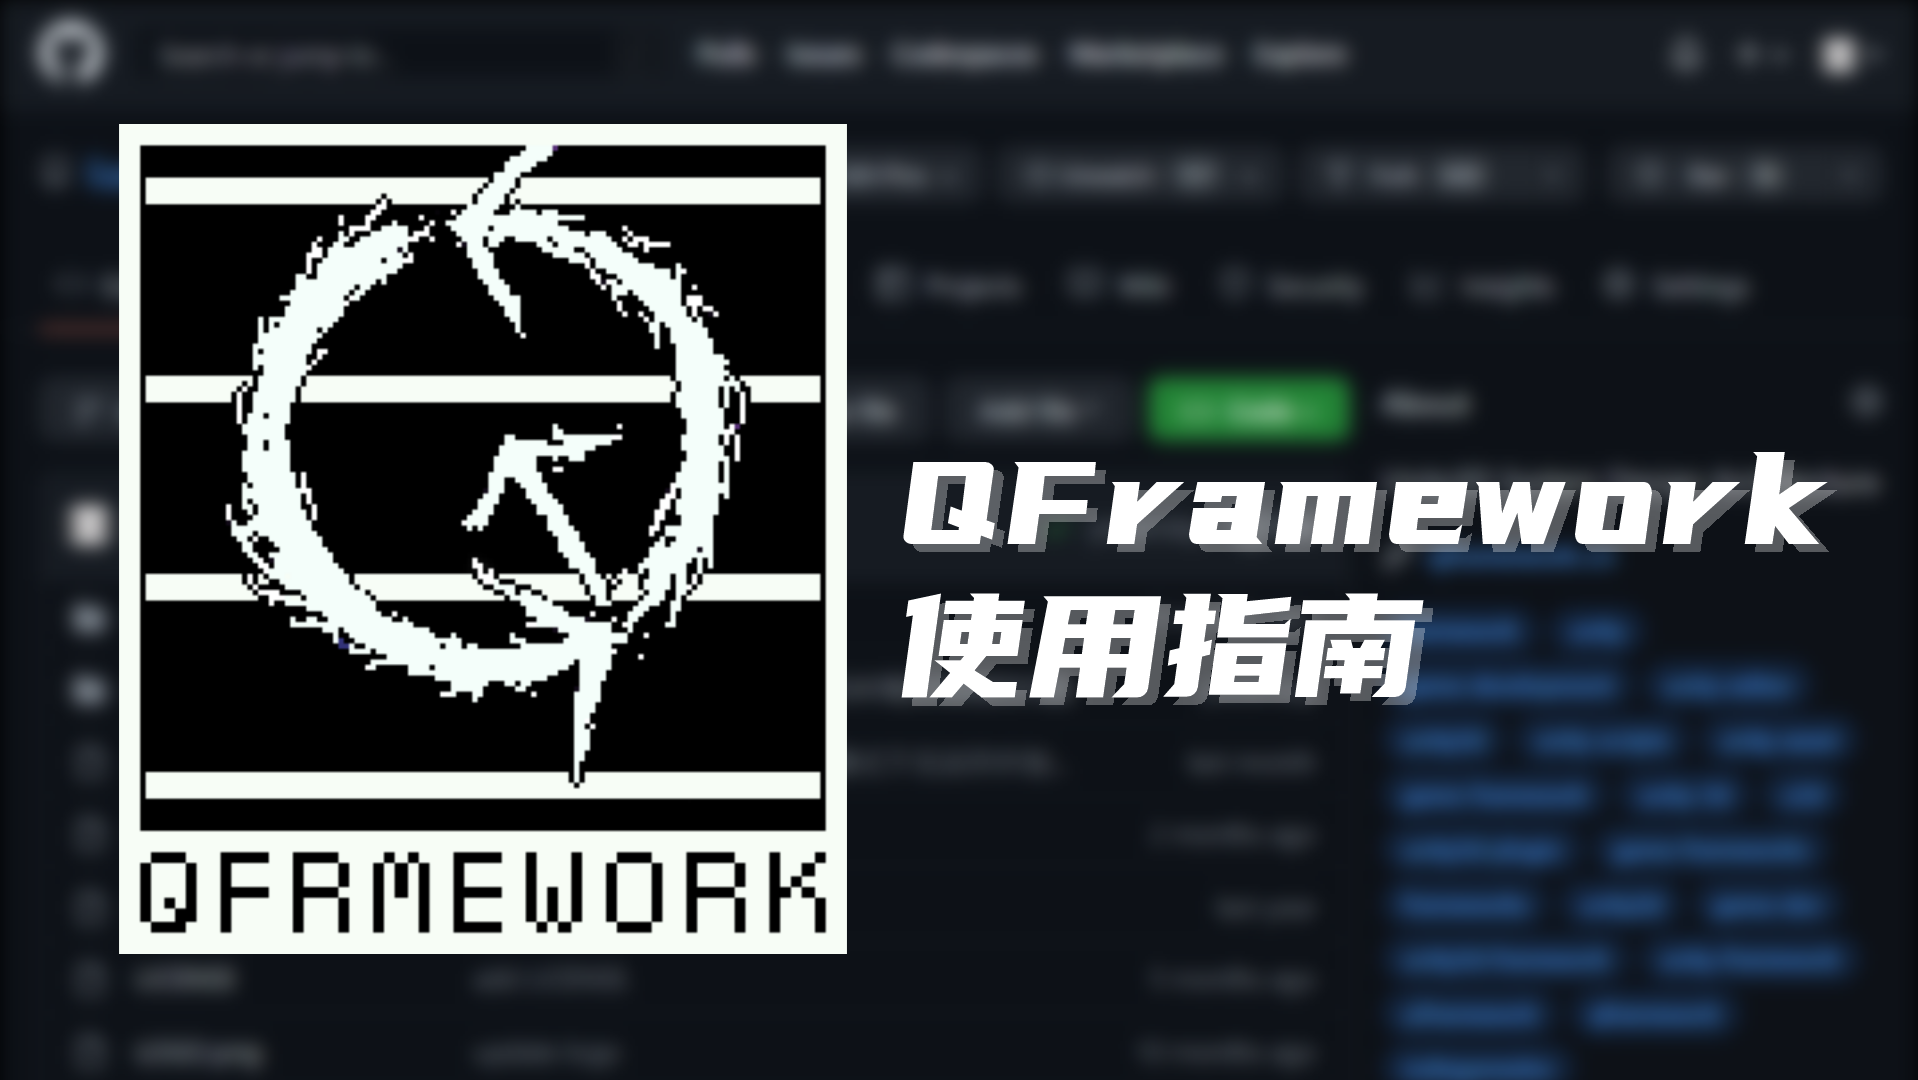 【Unity 框架】QFramework v1.0 使用指南 工具篇：05. ResKit 资源管理&amp;开发解决方案 | Unity 游戏框架 | Unity 游戏开发 | Unity 独立游戏 